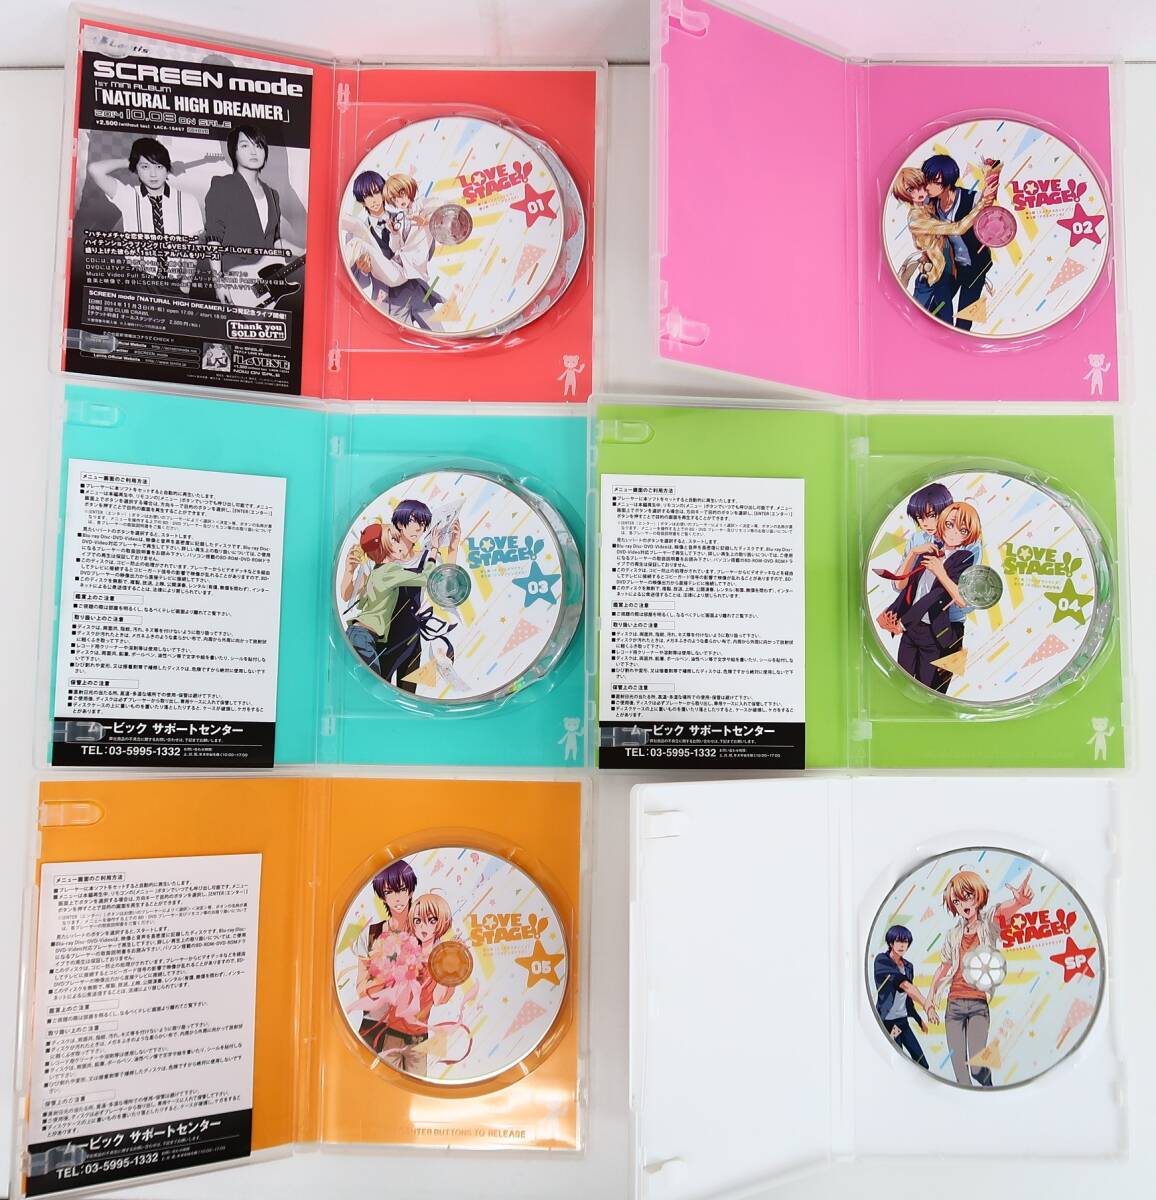 BU421/Blu-ray/LOVE STAGE!! 全5巻セット/アニメイト全巻収納BOX/コミック特典DVD SP付き_画像4